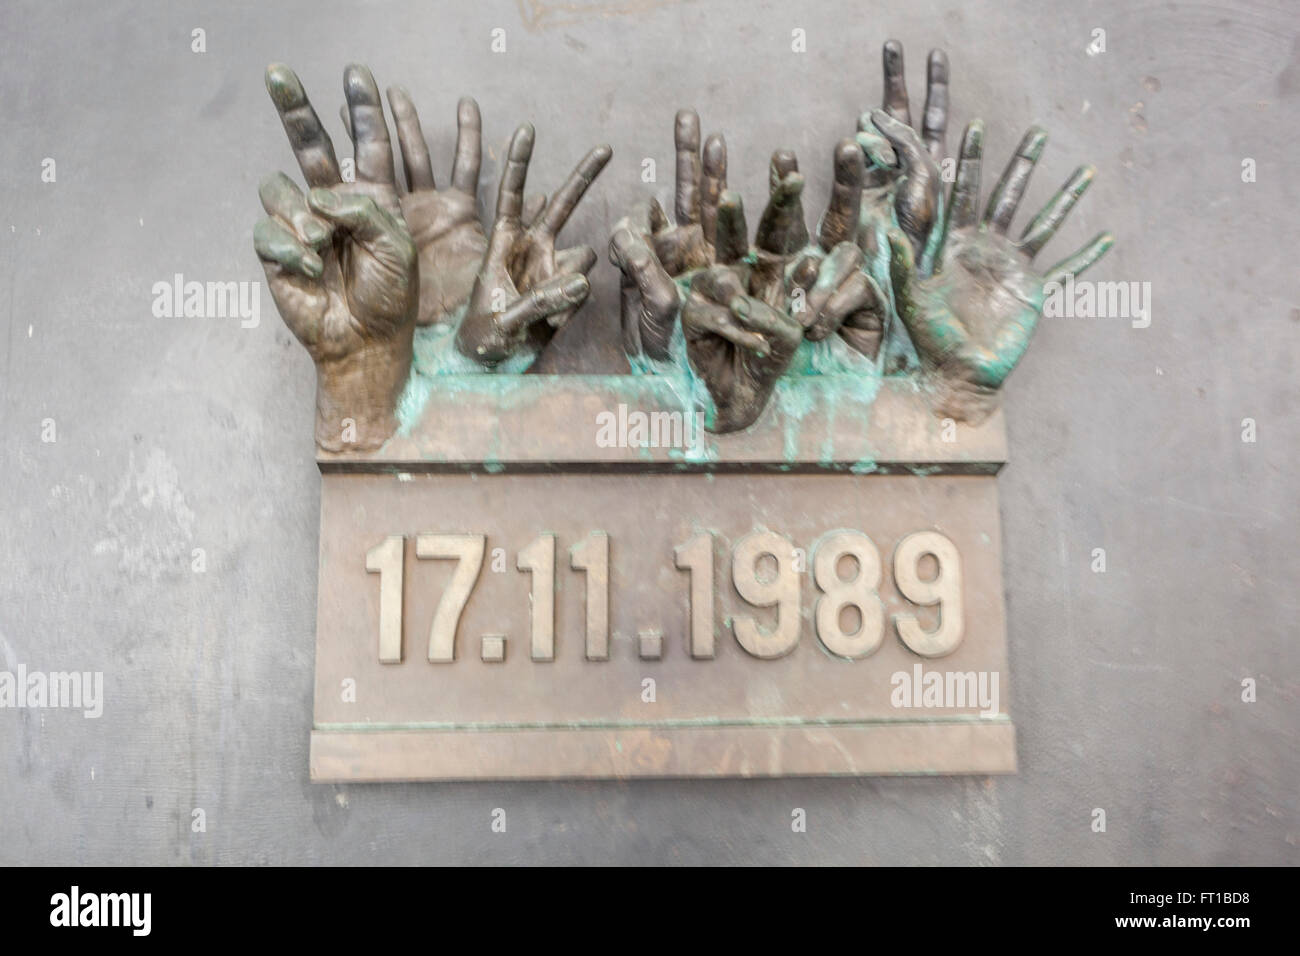 Scultura in bronzo, mani che assomigliano al 'massacro' su via Narodni Trida, l'inizio della Rivoluzione Vvelluto Ceca a Praga, Repubblica Ceca Foto Stock